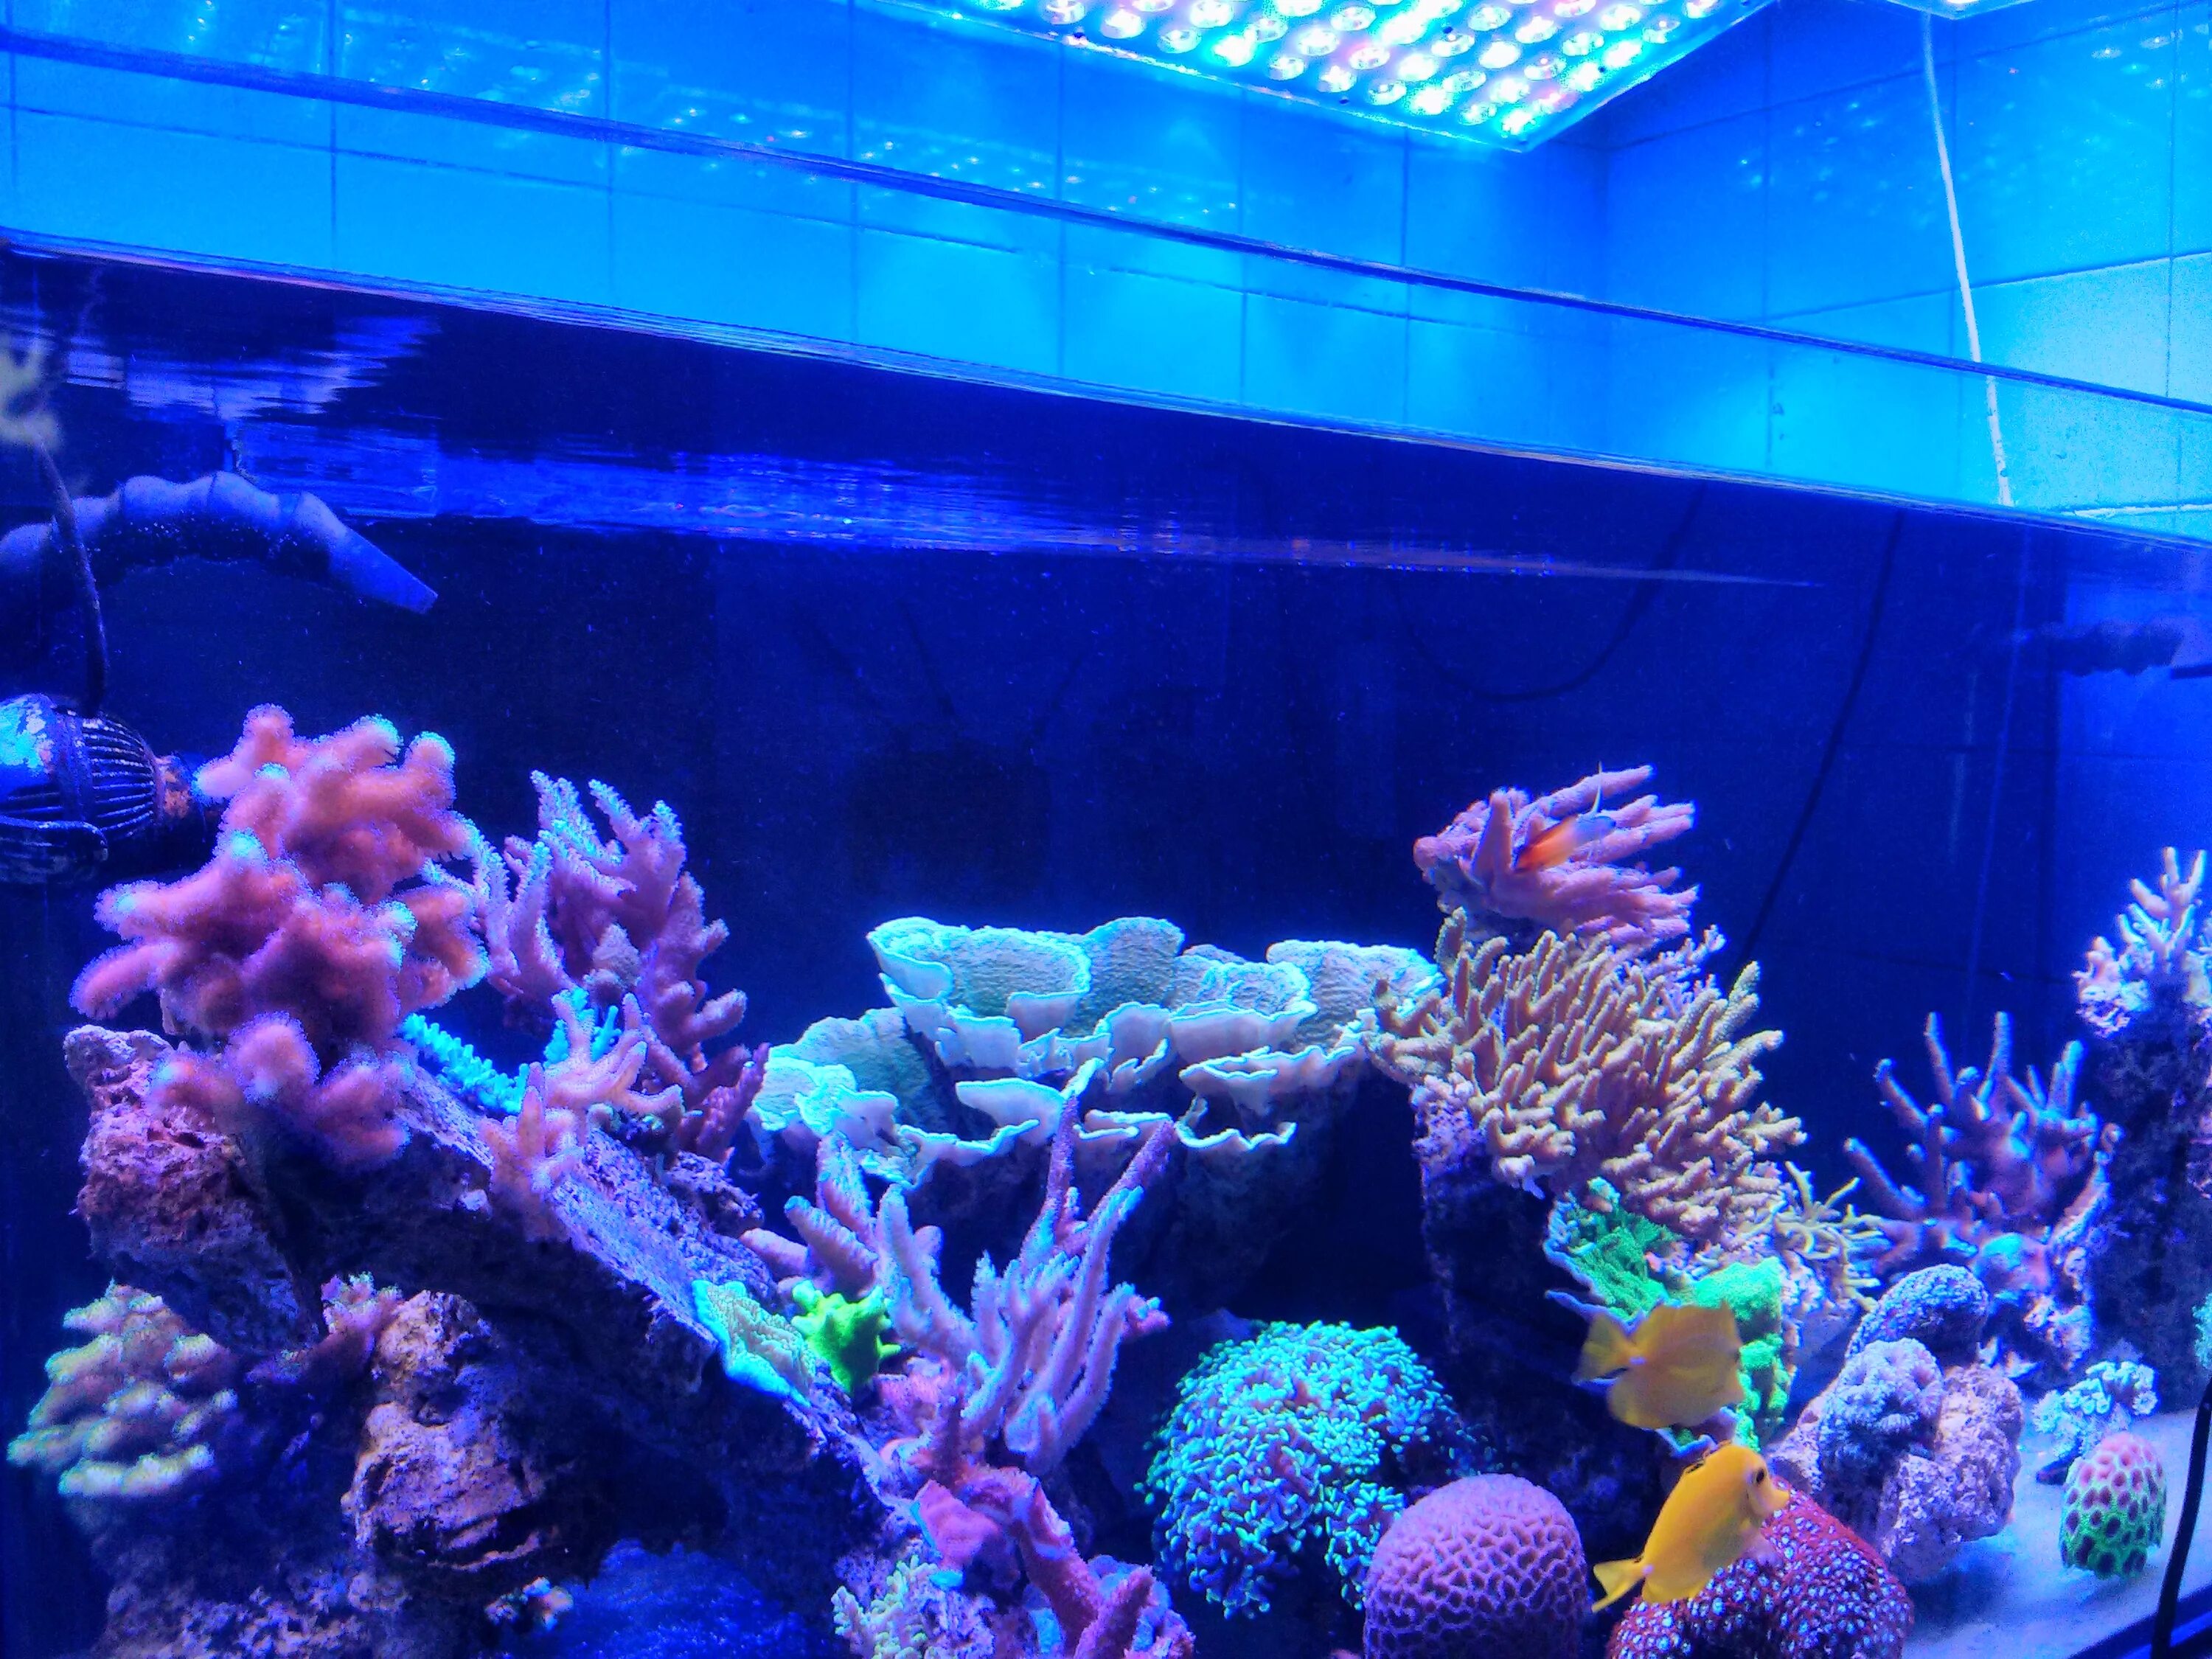 Marine aquarium. Самые красивые аквариумы. Аквариум в голубых тонах. Аквариум с неоновой подсветкой. Аквариум в синих тонах.